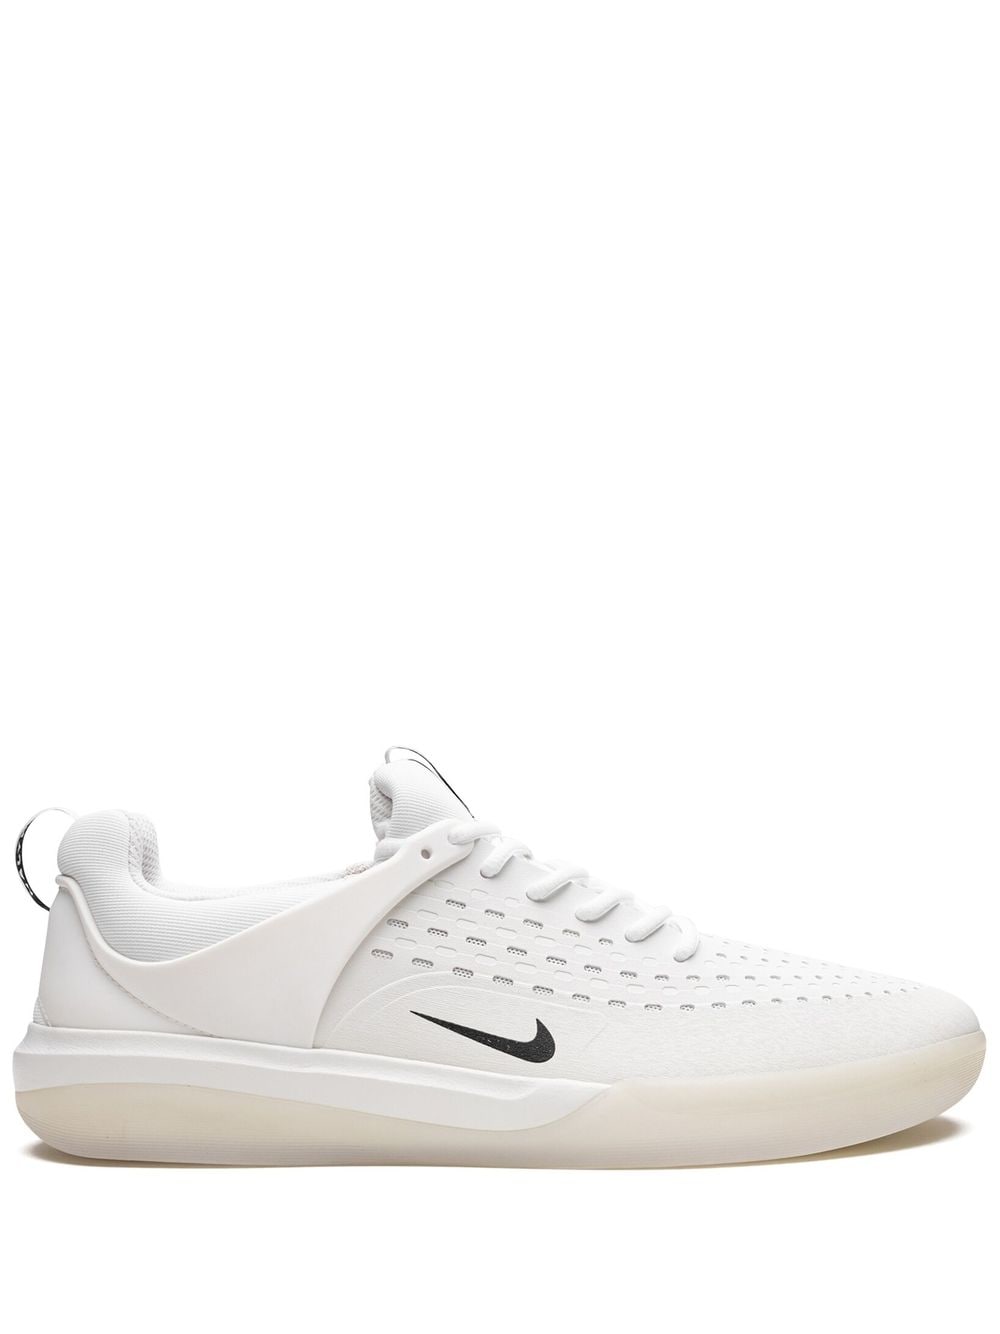 Nike Sb Nyjah 3 Sneakers In White